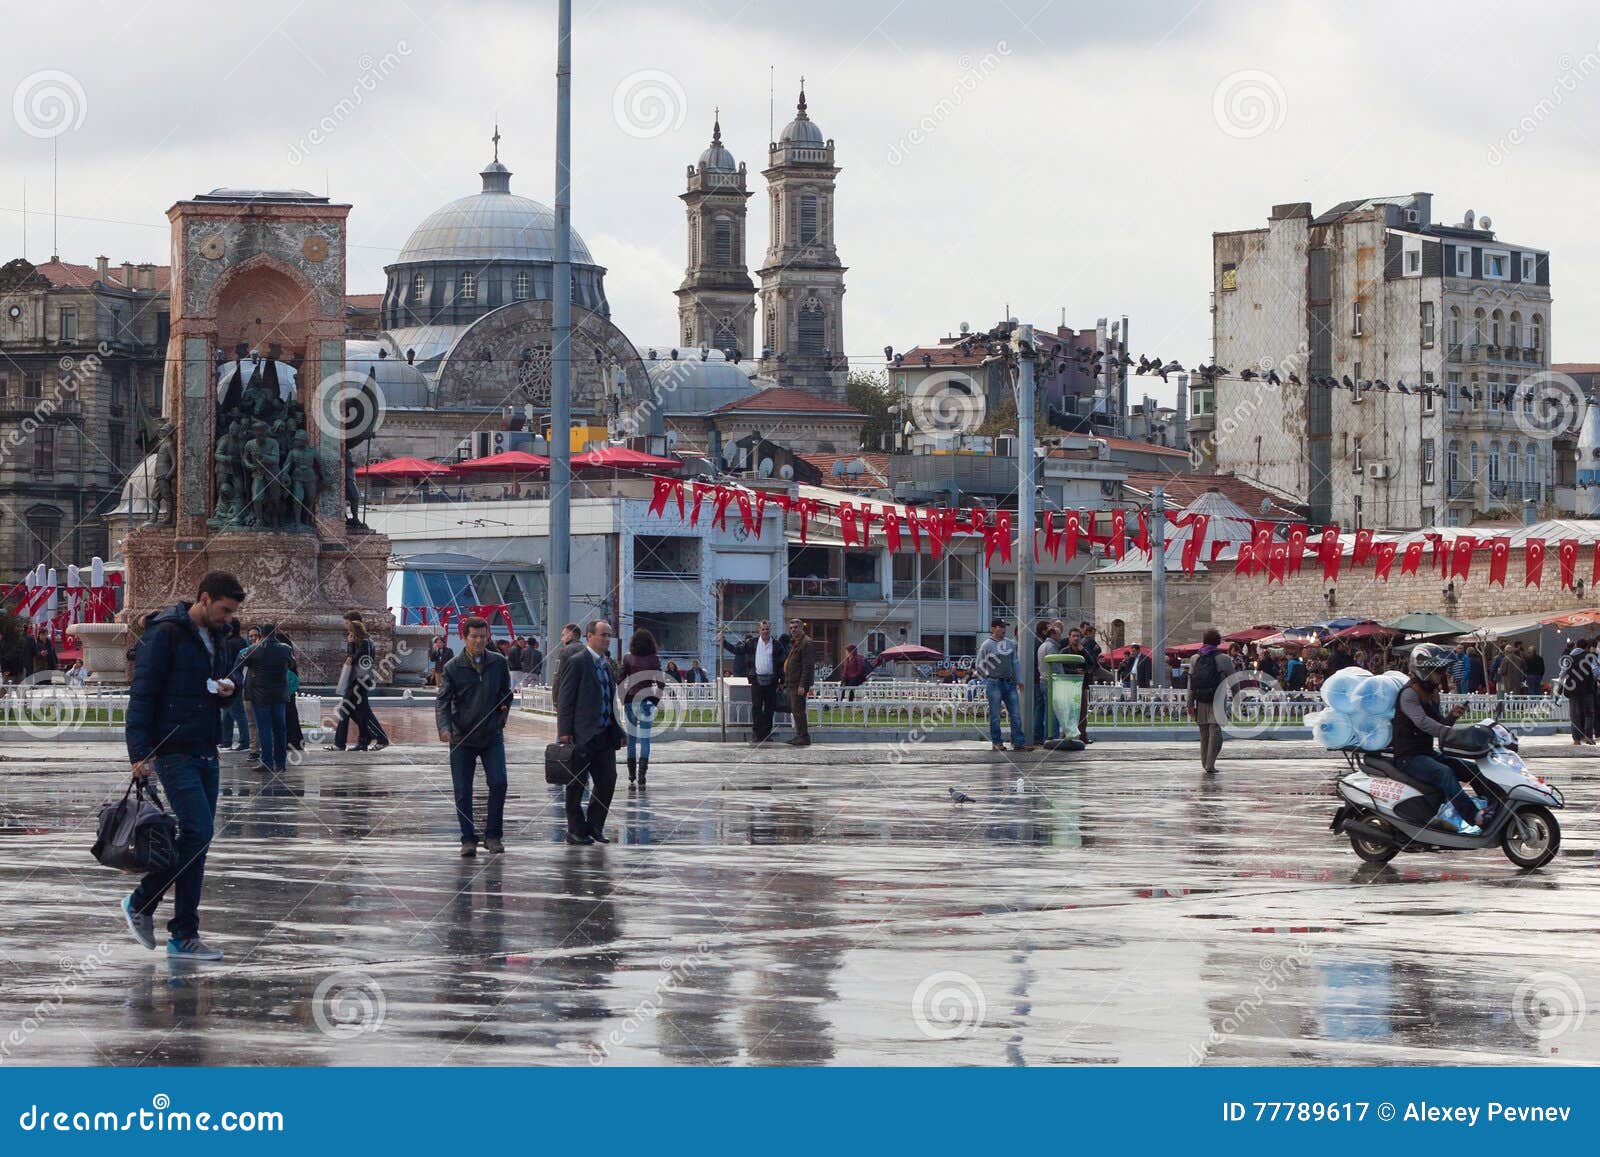 Погода в стамбуле в июле. Стамбул в ноябре. Стамбул улицы ноябрь. Стамбул Турция в ноябре. Площадь Таксим в Стамбуле.